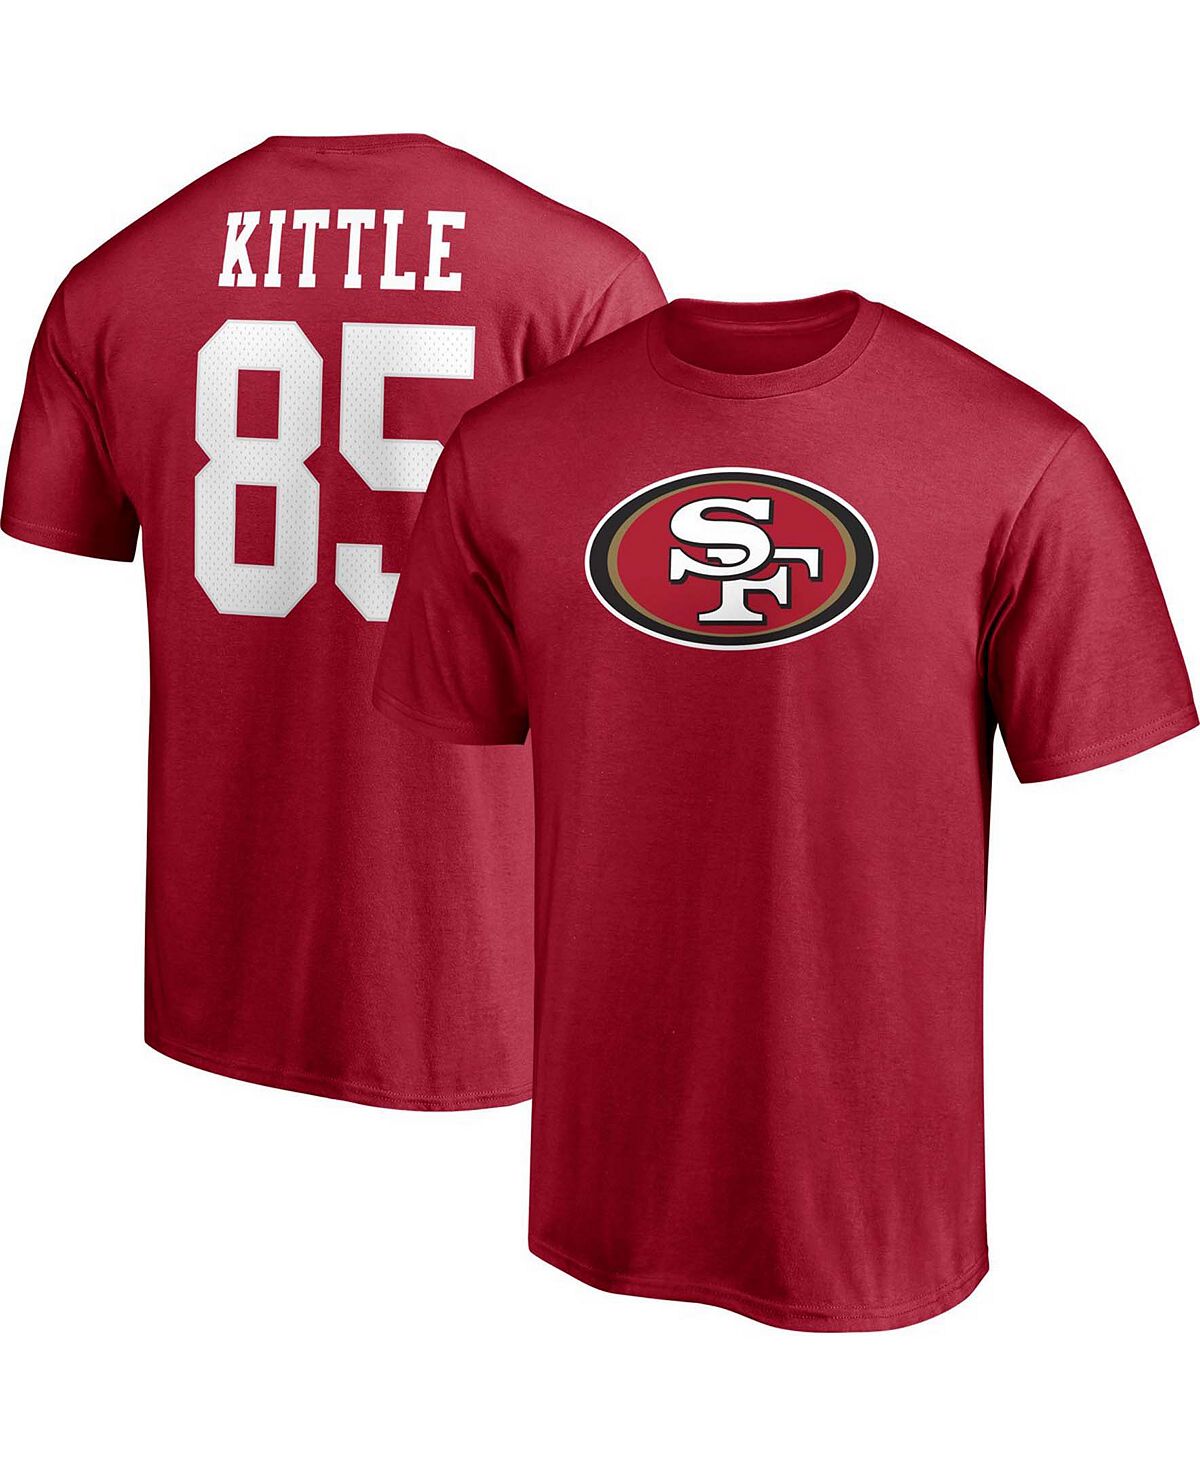 Мужская футболка с именем и номером игрока George Kittle Scarlet San Francisco 49ers Fanatics медуница миссис киттл